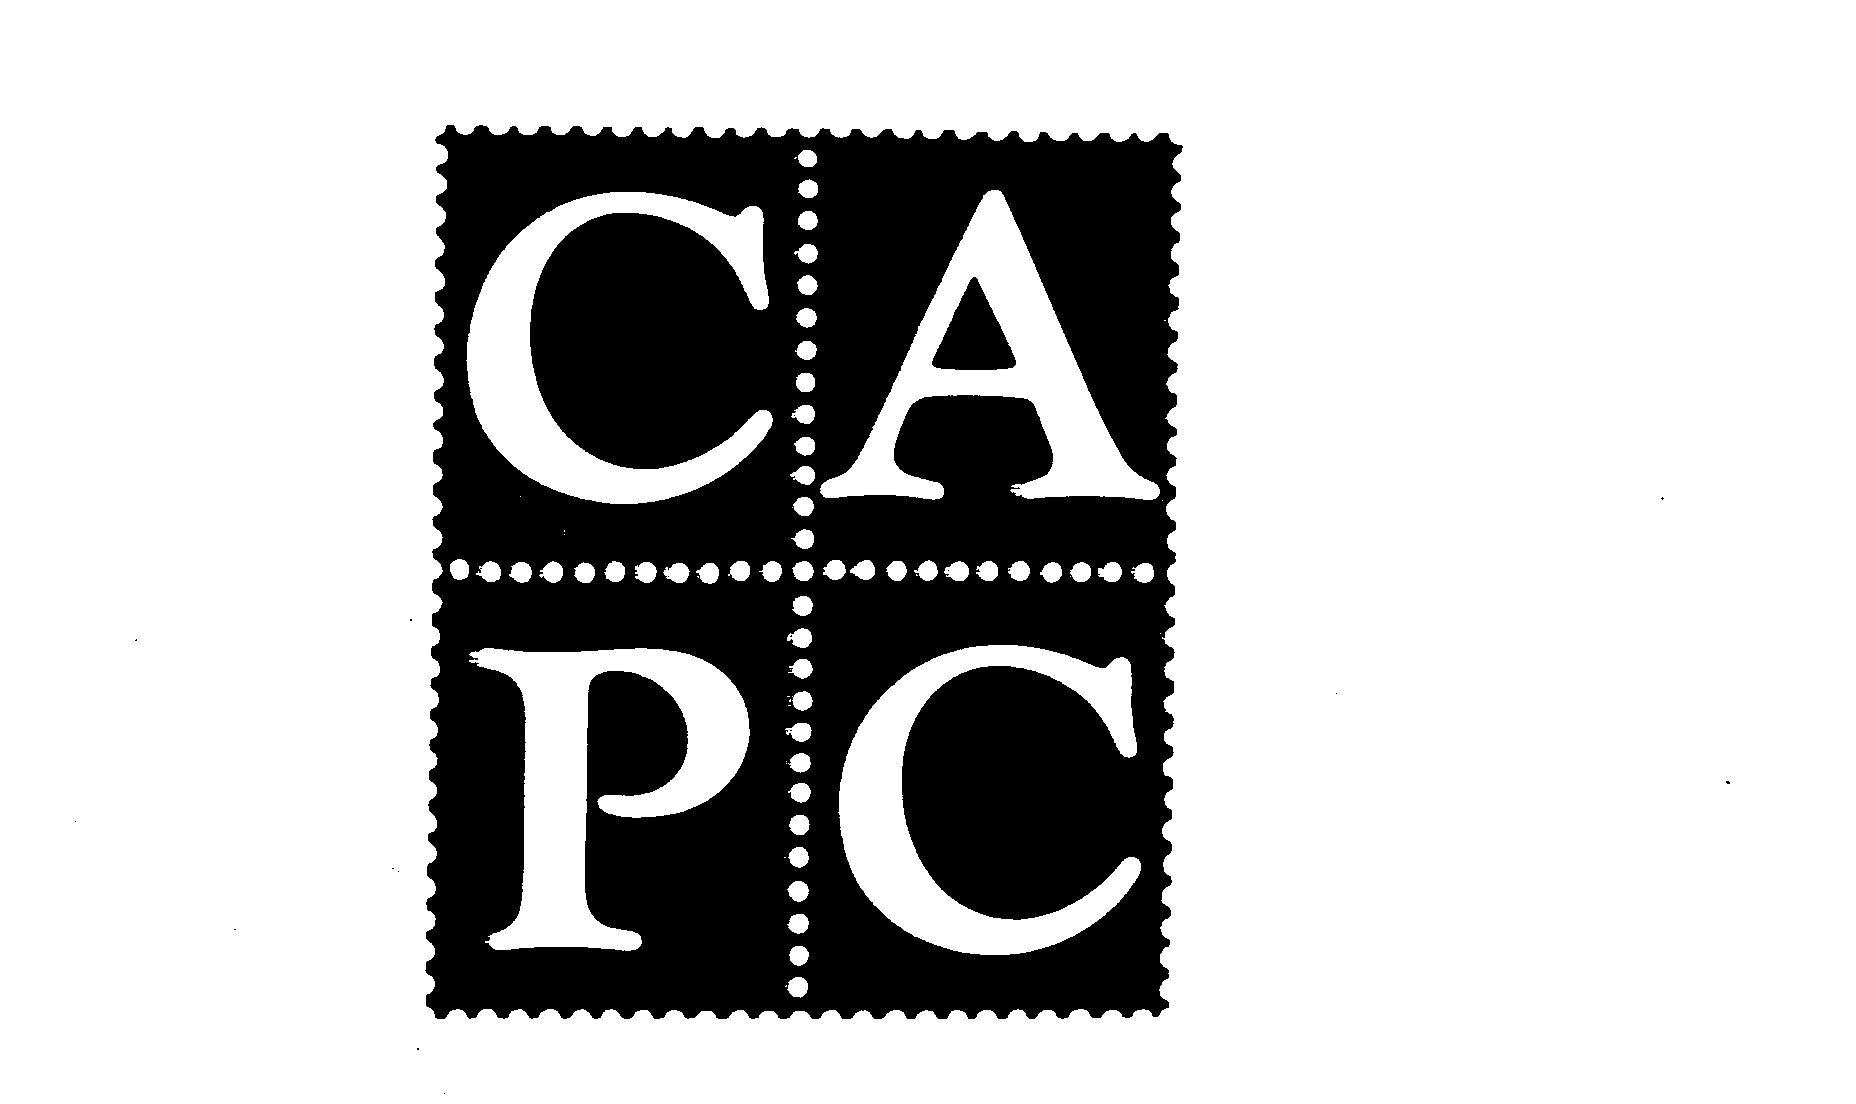 CAPC